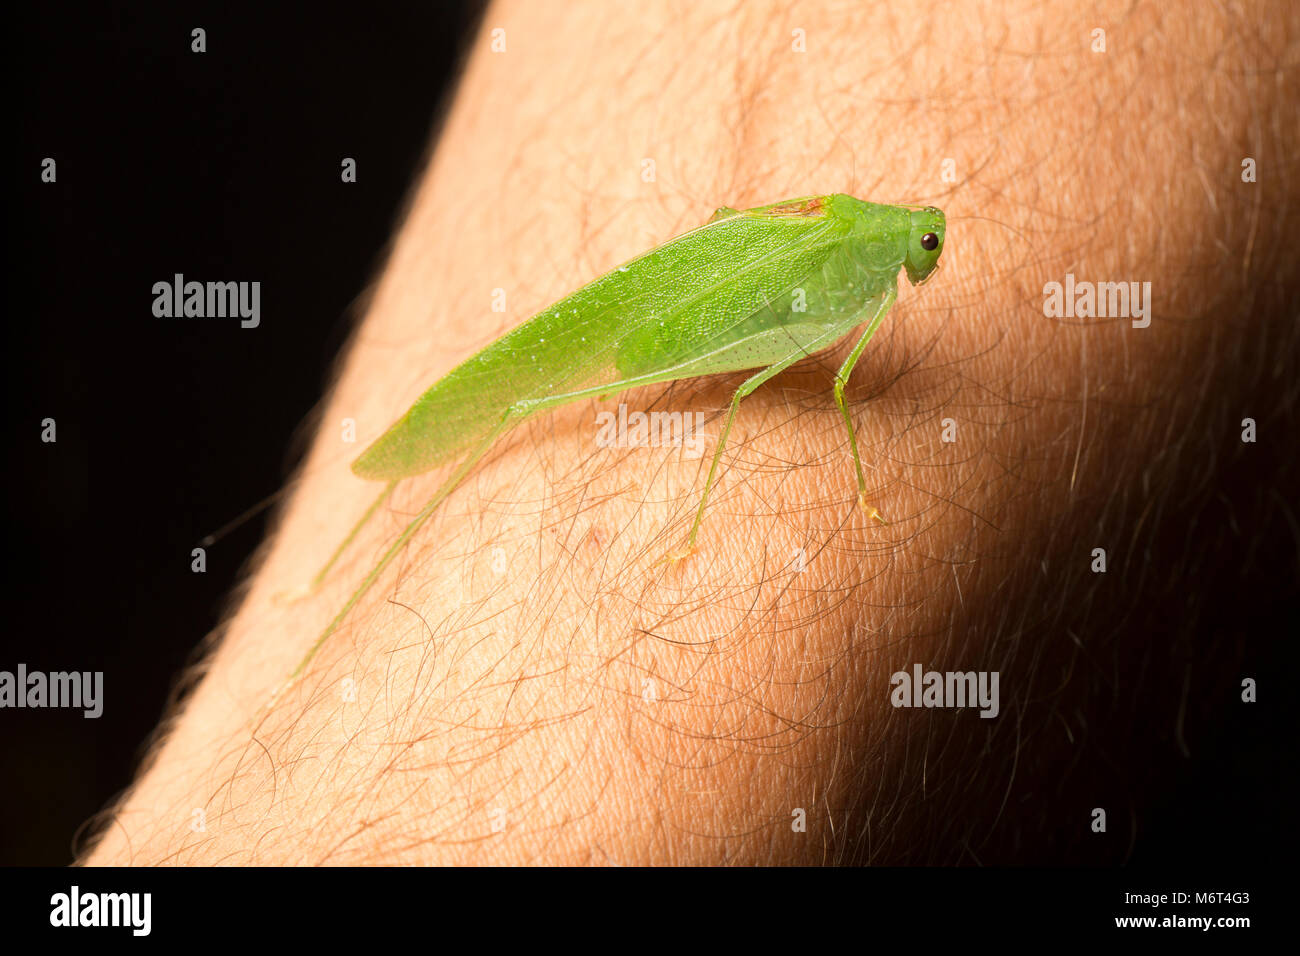 Bush Cricket oder katydid, fotografiert auf einem menschlichen Arm im Dschungel in der Nacht in der Nähe von Bakhuis, Suriname, Südamerika Stockfoto